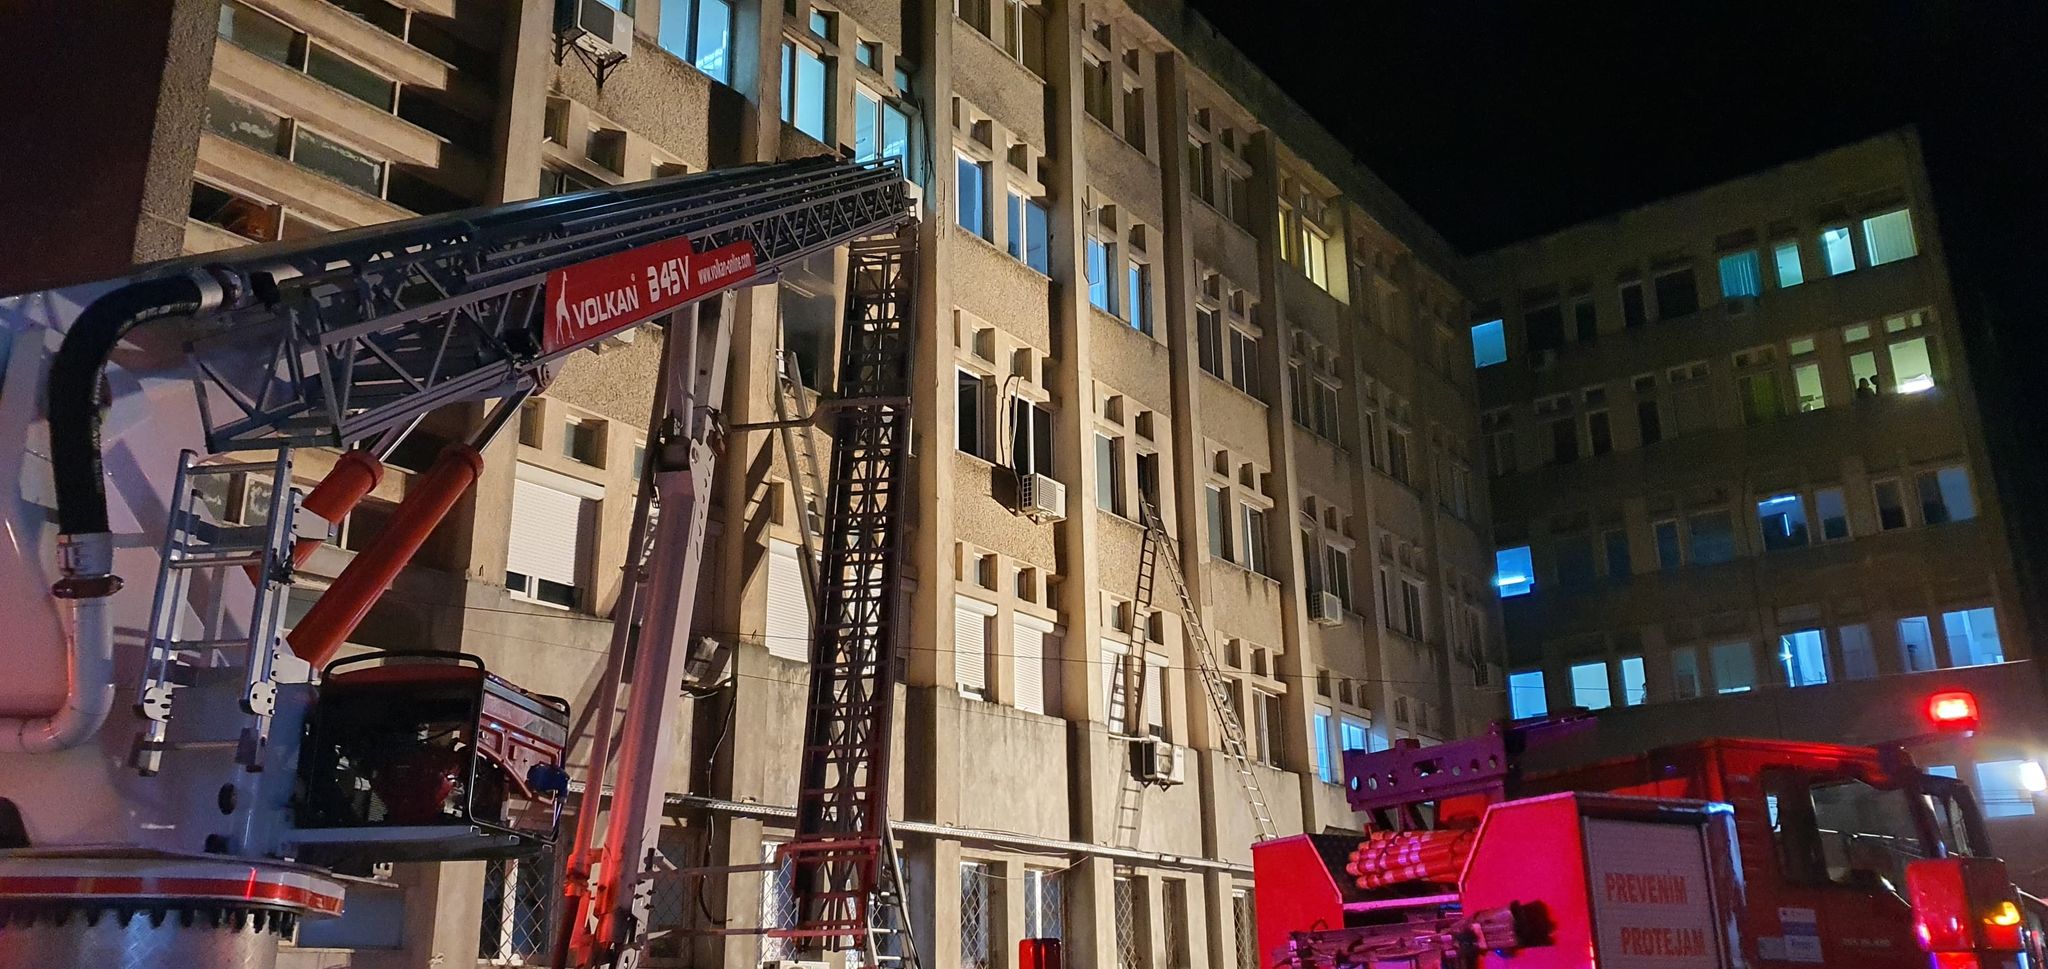 Tragedie fără margini la spitalul din Piatra Neamț. 10 persoane au pierit în focul izbucnit la secția ATI